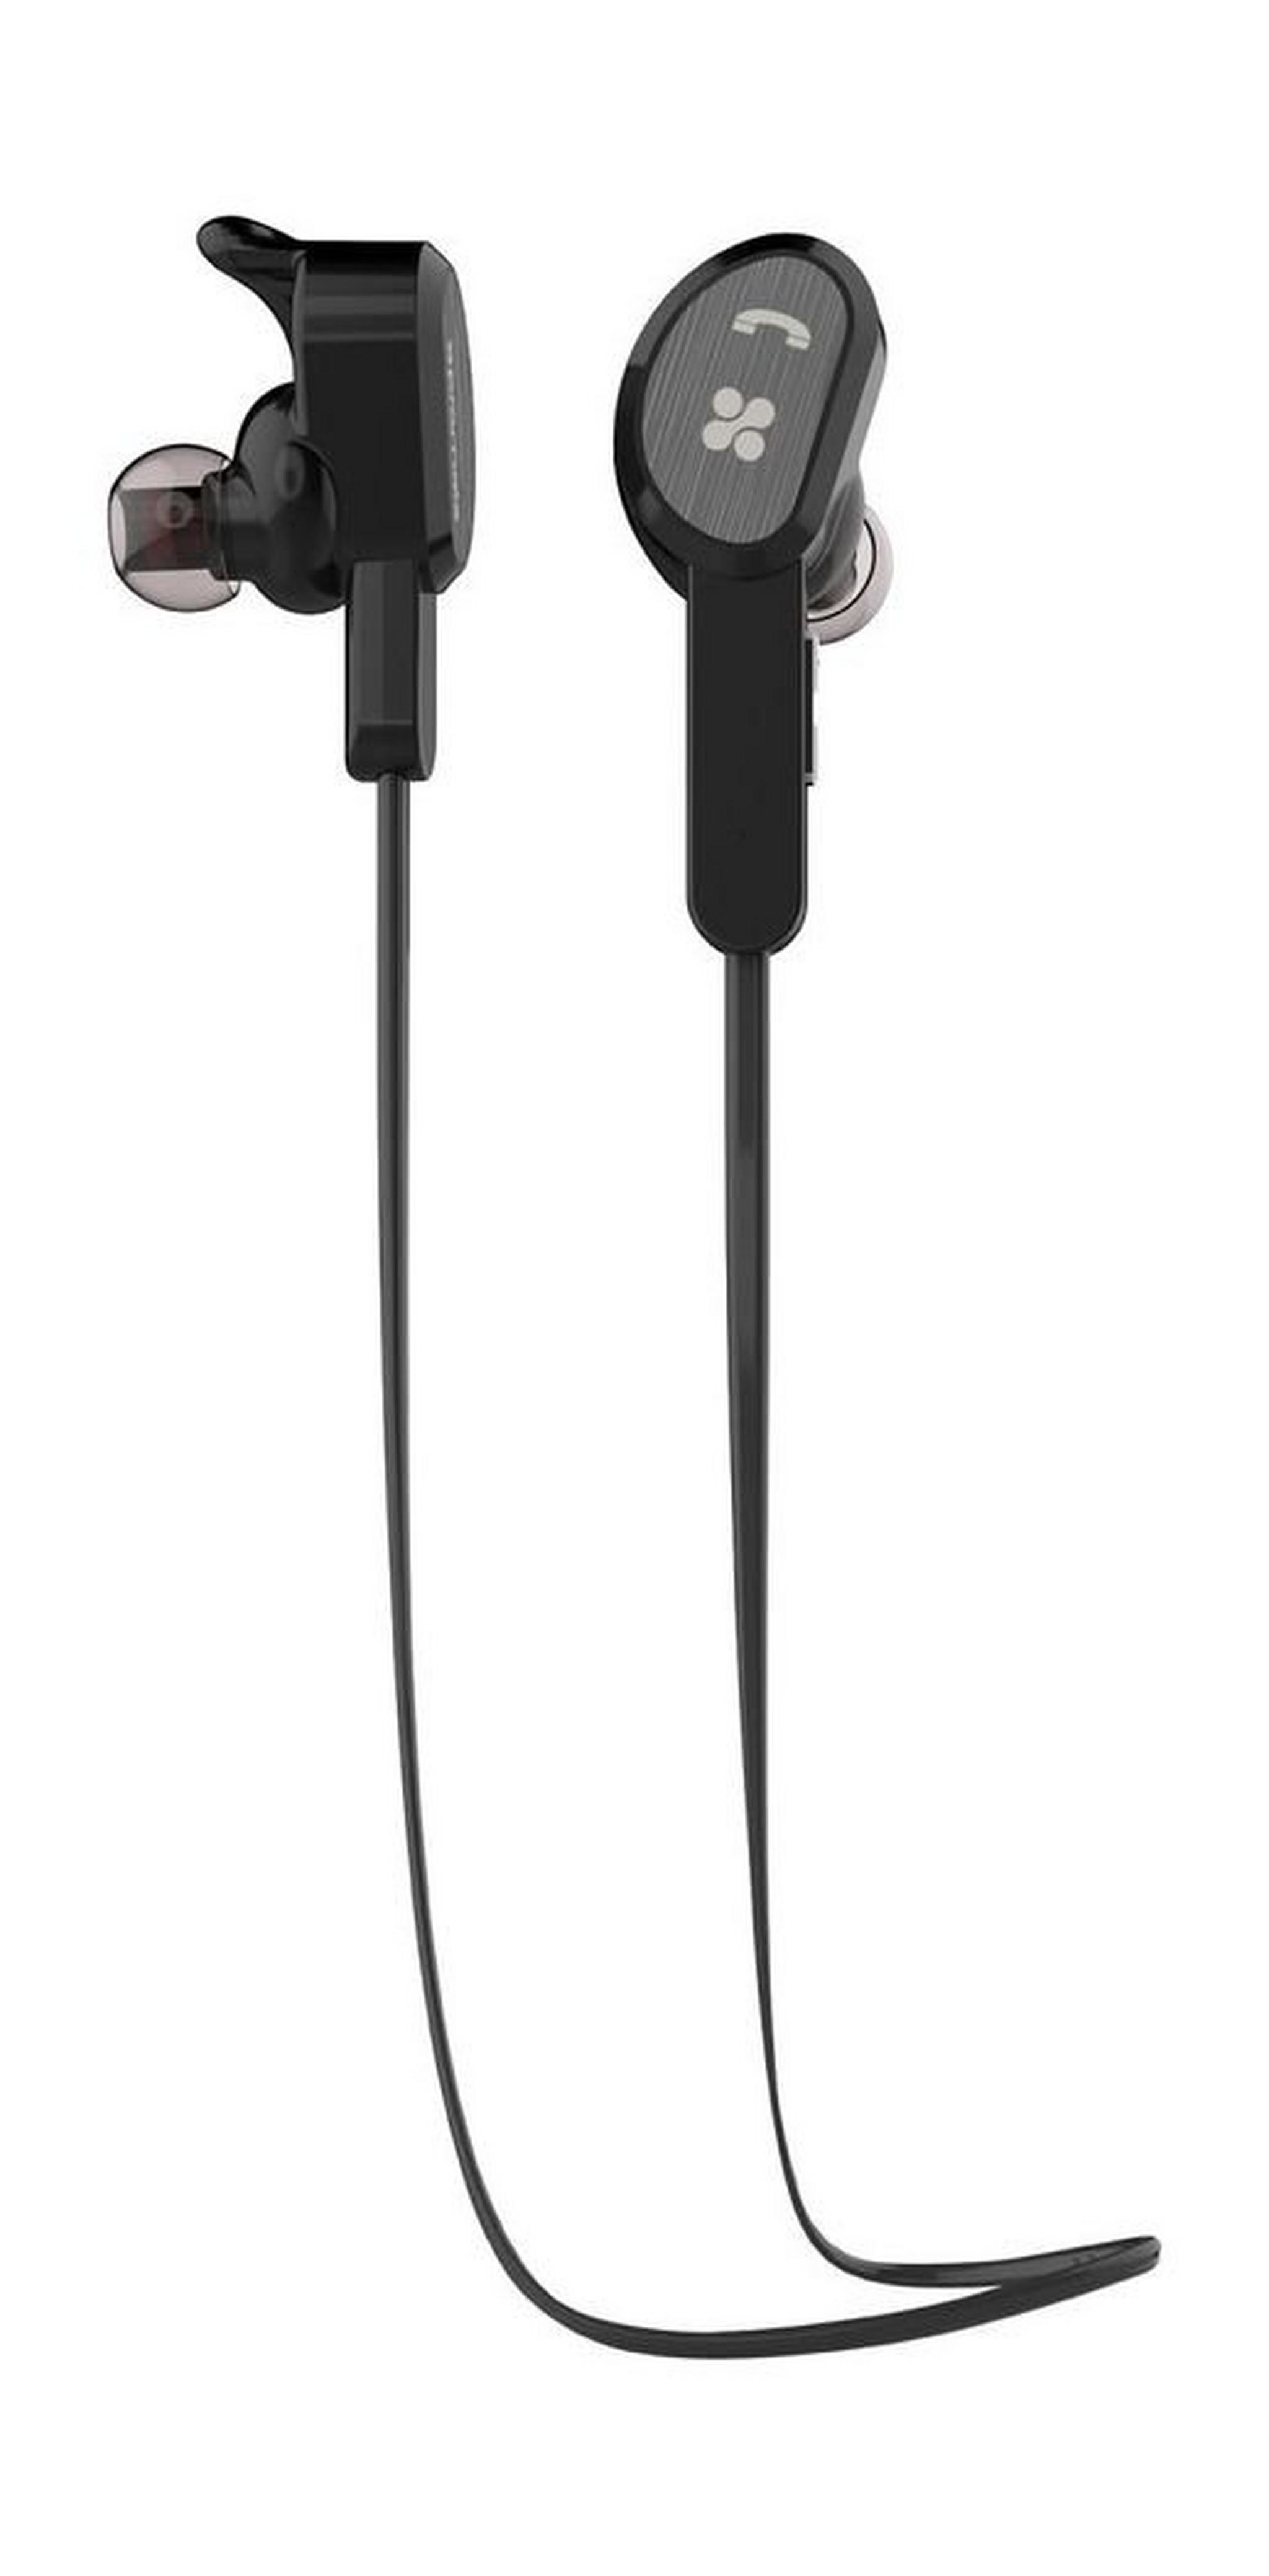 Promate Vitally-2 Bluetooth Wireless Gear Bud In-Ear Earphone With Mic - Black